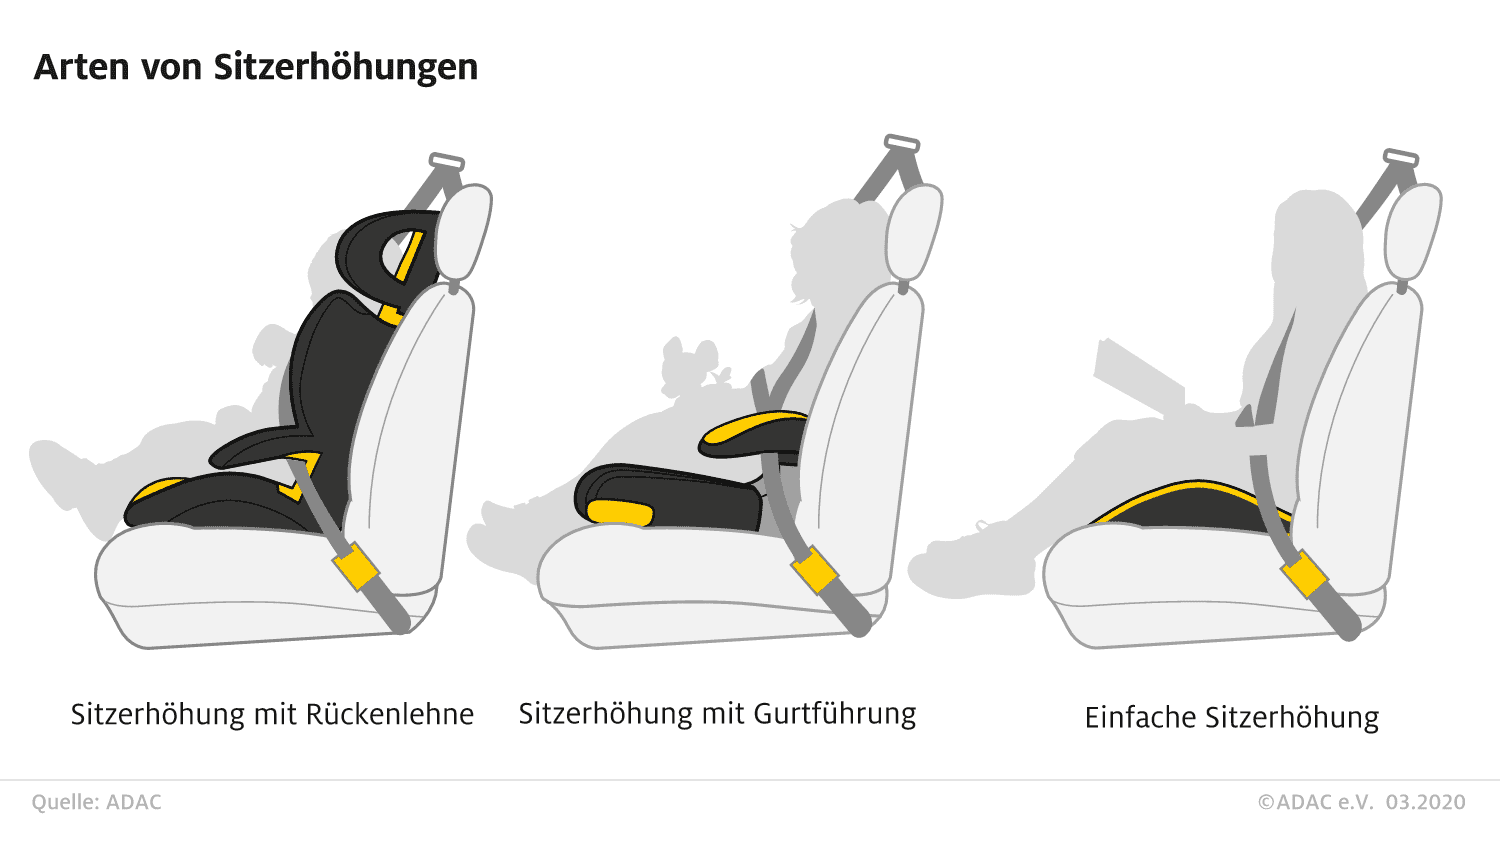 odeer Erwachsener Sitzerhöhung für Auto, Tragbarer Kindersitz für Fahrer,  Beifahrer, Atmungsaktive rutschfeste 3D-Netzkissen mit praktischem Griff